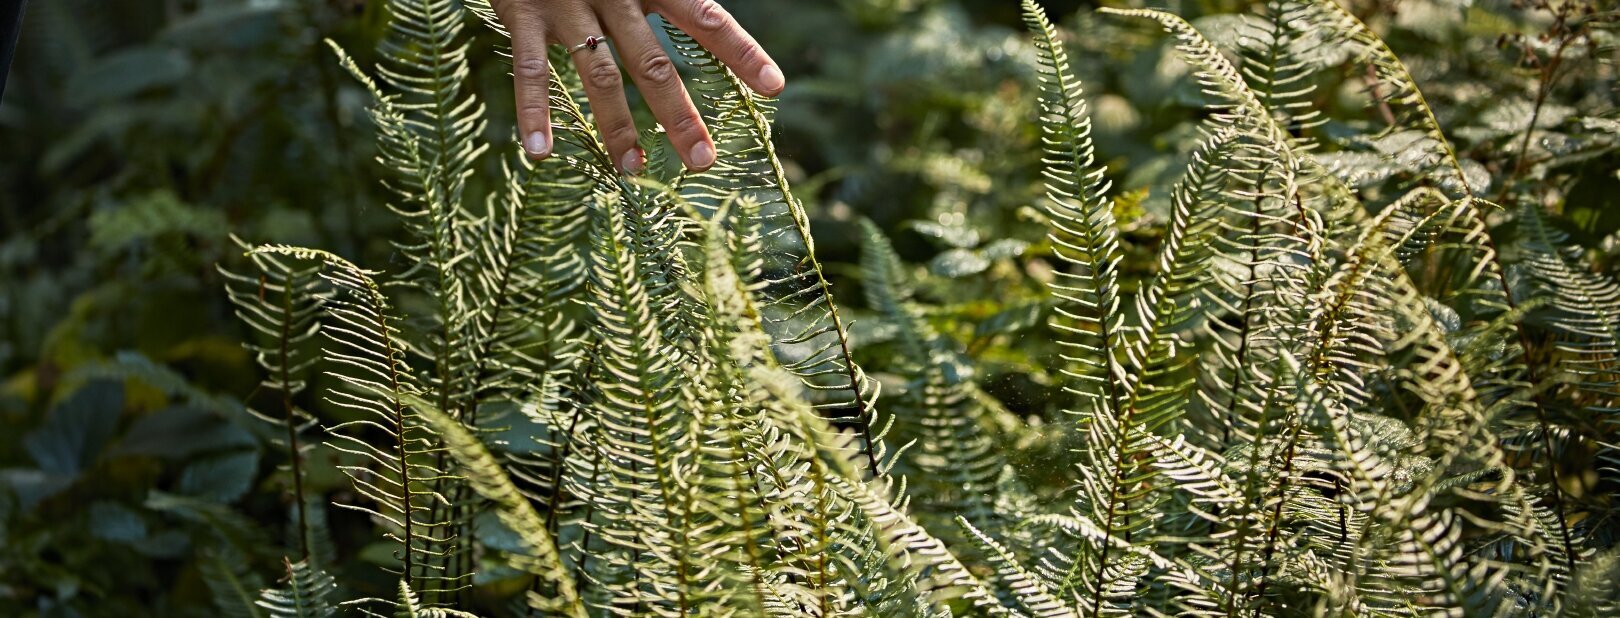 Hier sehen Sie eine Frauenhand die im Wald die Gräßer und Blätter durch ihre Hände gleiten lässt. 